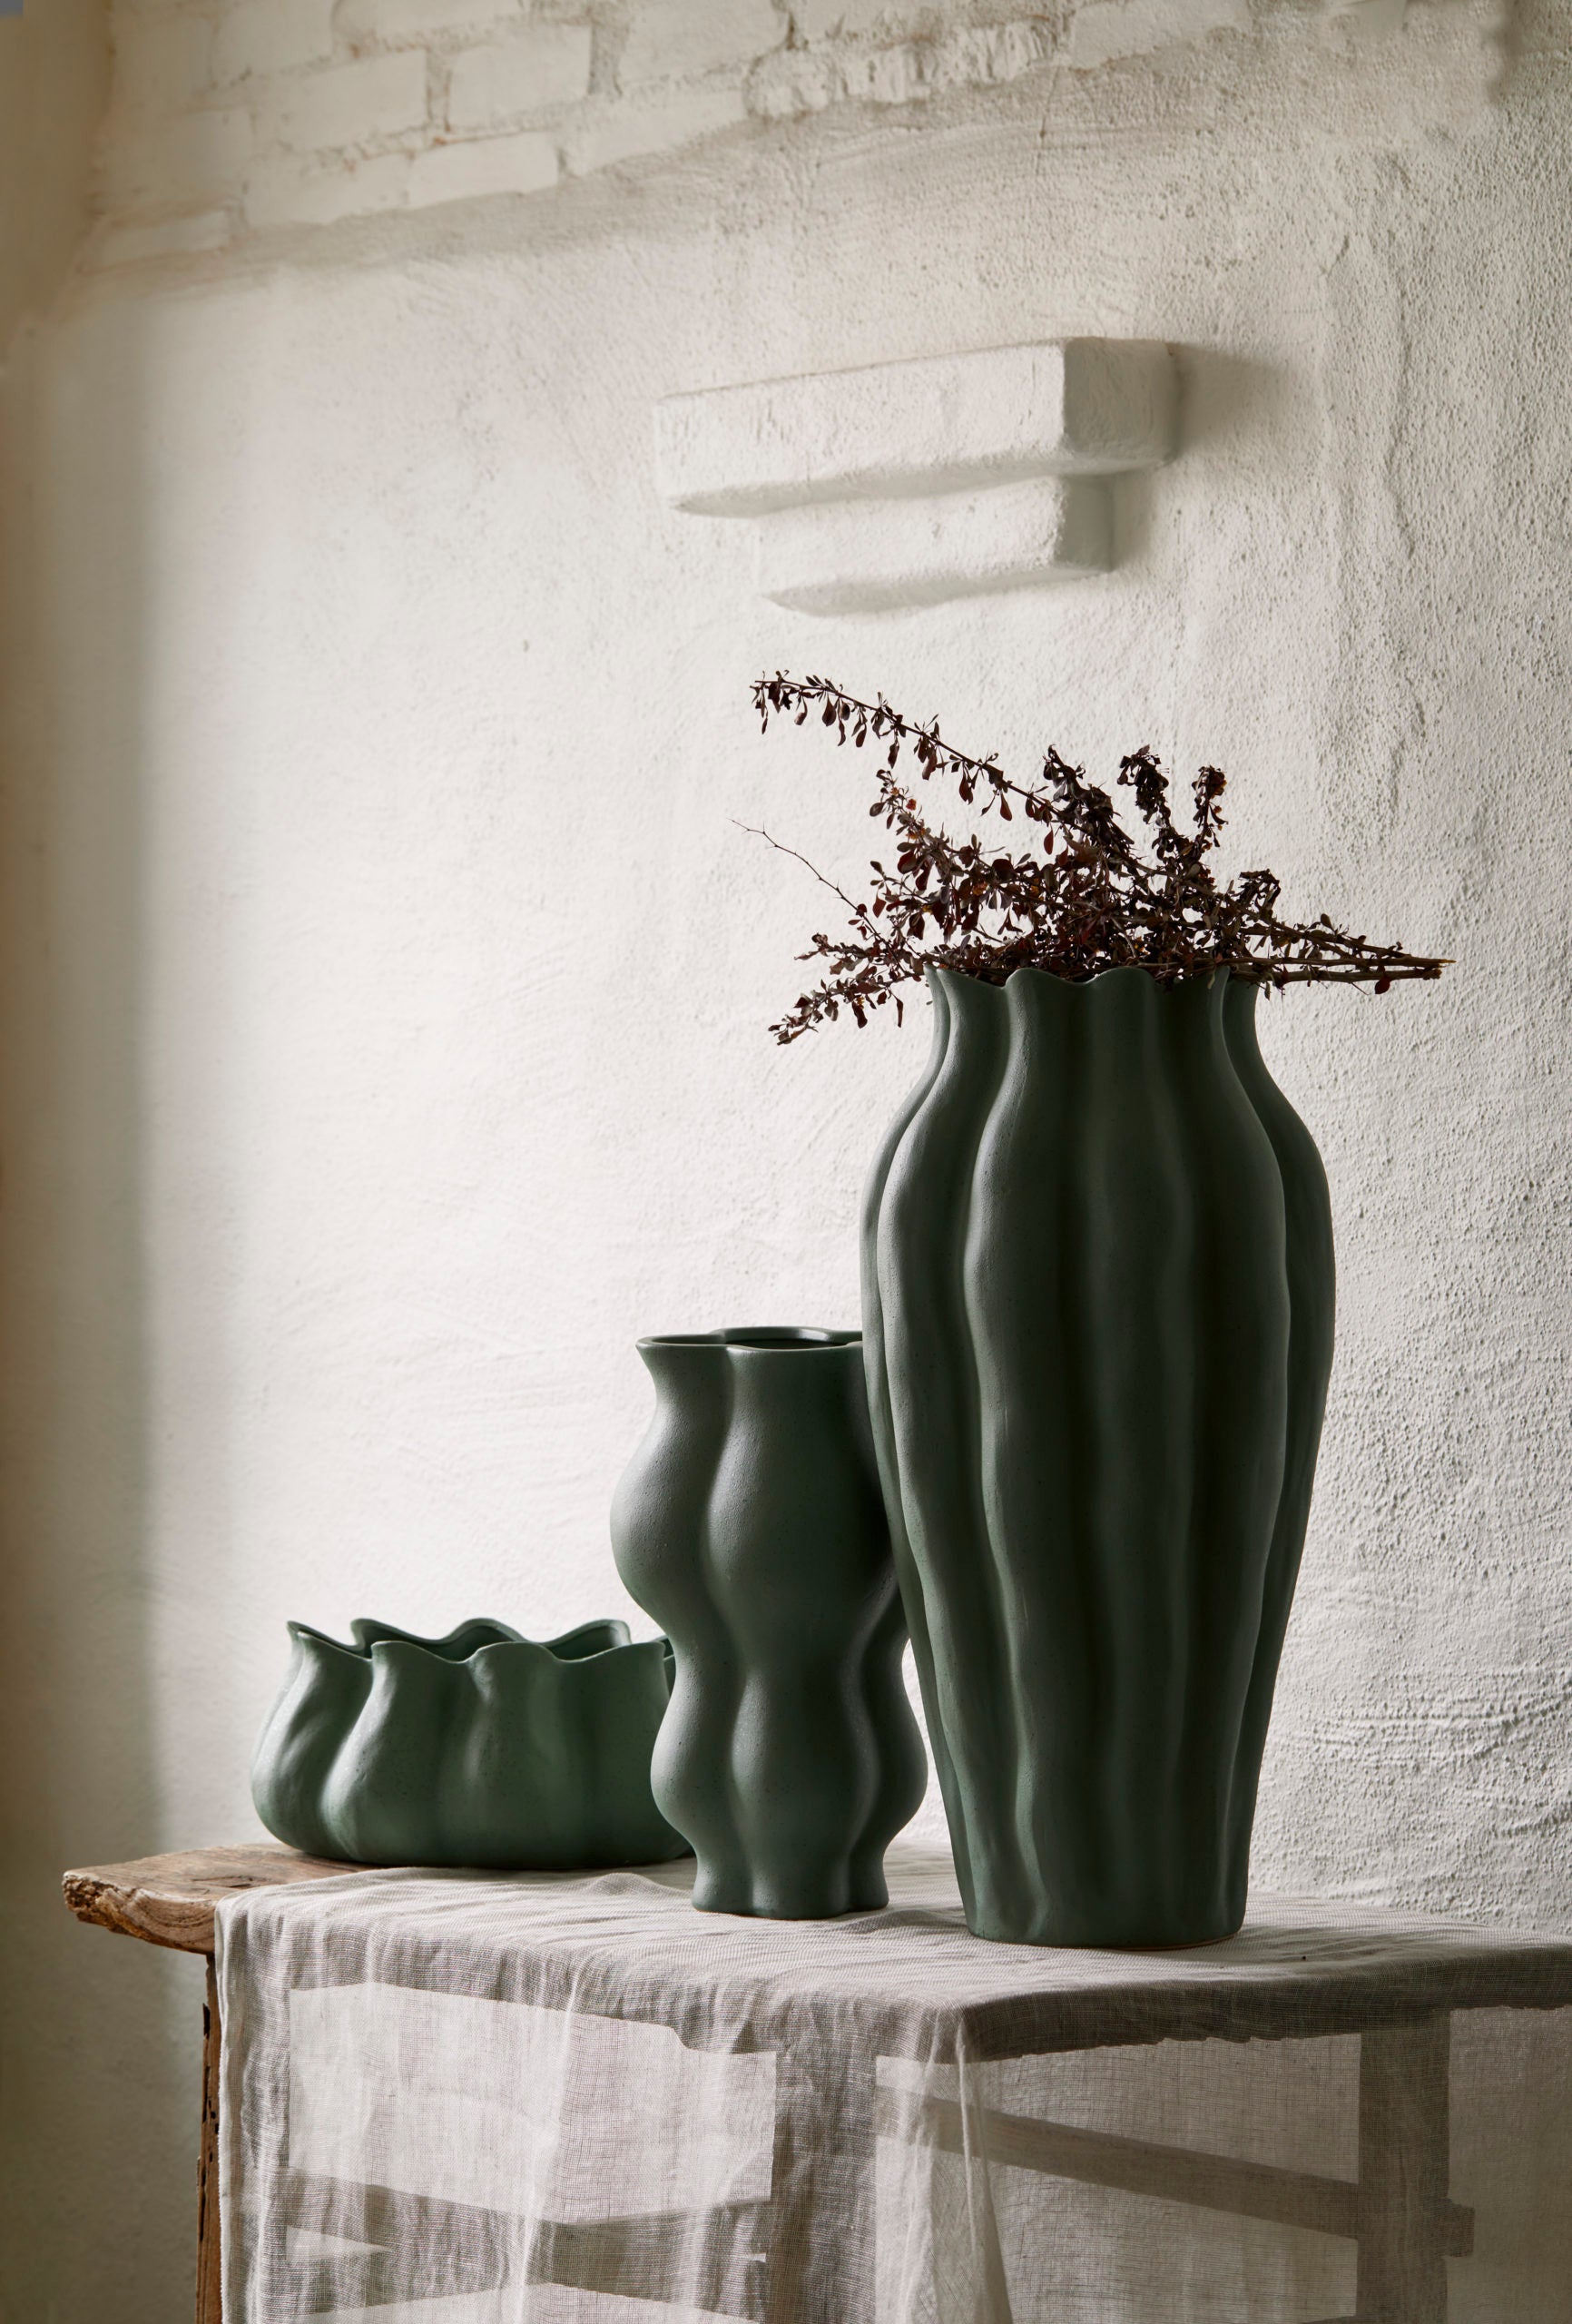 Denna stora urna/vas i stengods har en härlig skulpturell form och en jadegrön färg inspirerad av gammalt kinesiskt keramik. Höjd 62cm och omkrets 31cm. Från det danska inredningsföretaget Day home.